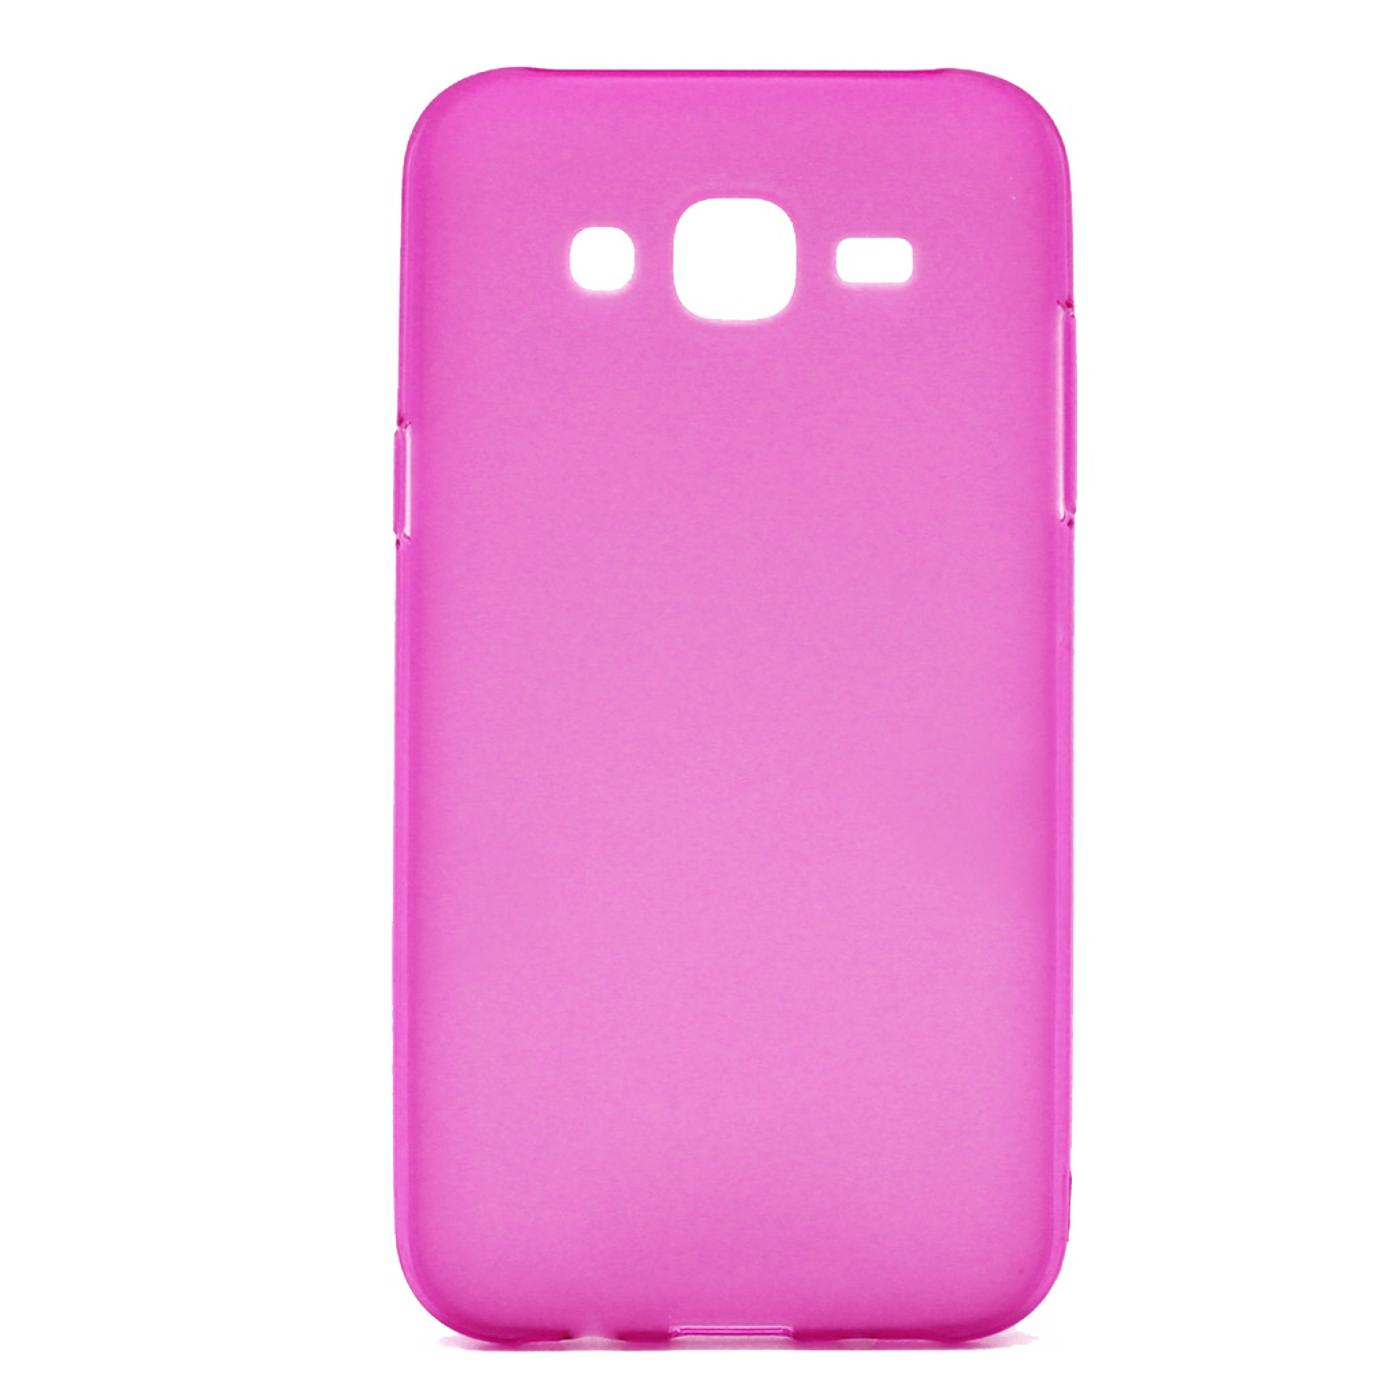 Futrola za mobitel Samsung J710, pink